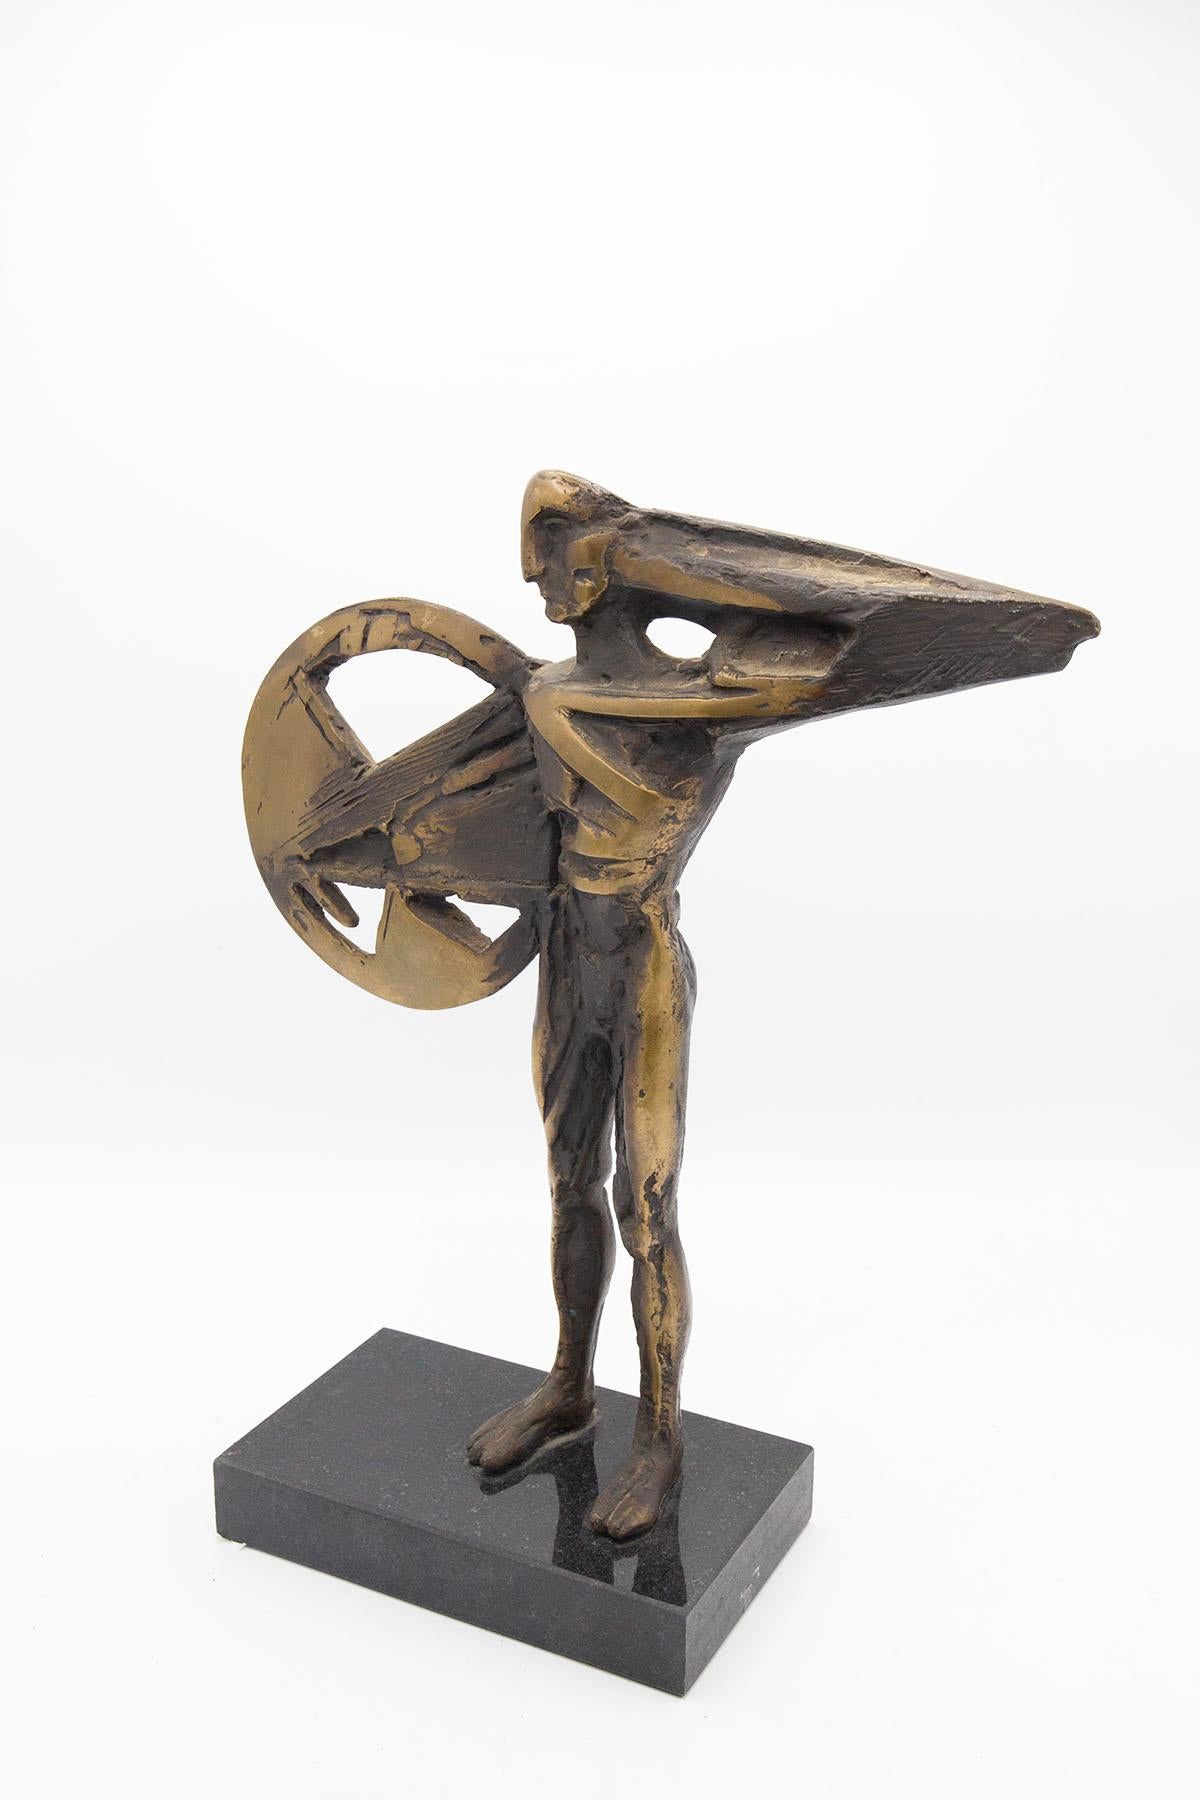 La sculpture dont nous voulons vous parler est un exemple fascinant de l'art futuriste italien des années 1930, réalisé en bronze. La période futuriste, qui a vu le jour en Italie au début du XXe siècle, se caractérise par une grande importance